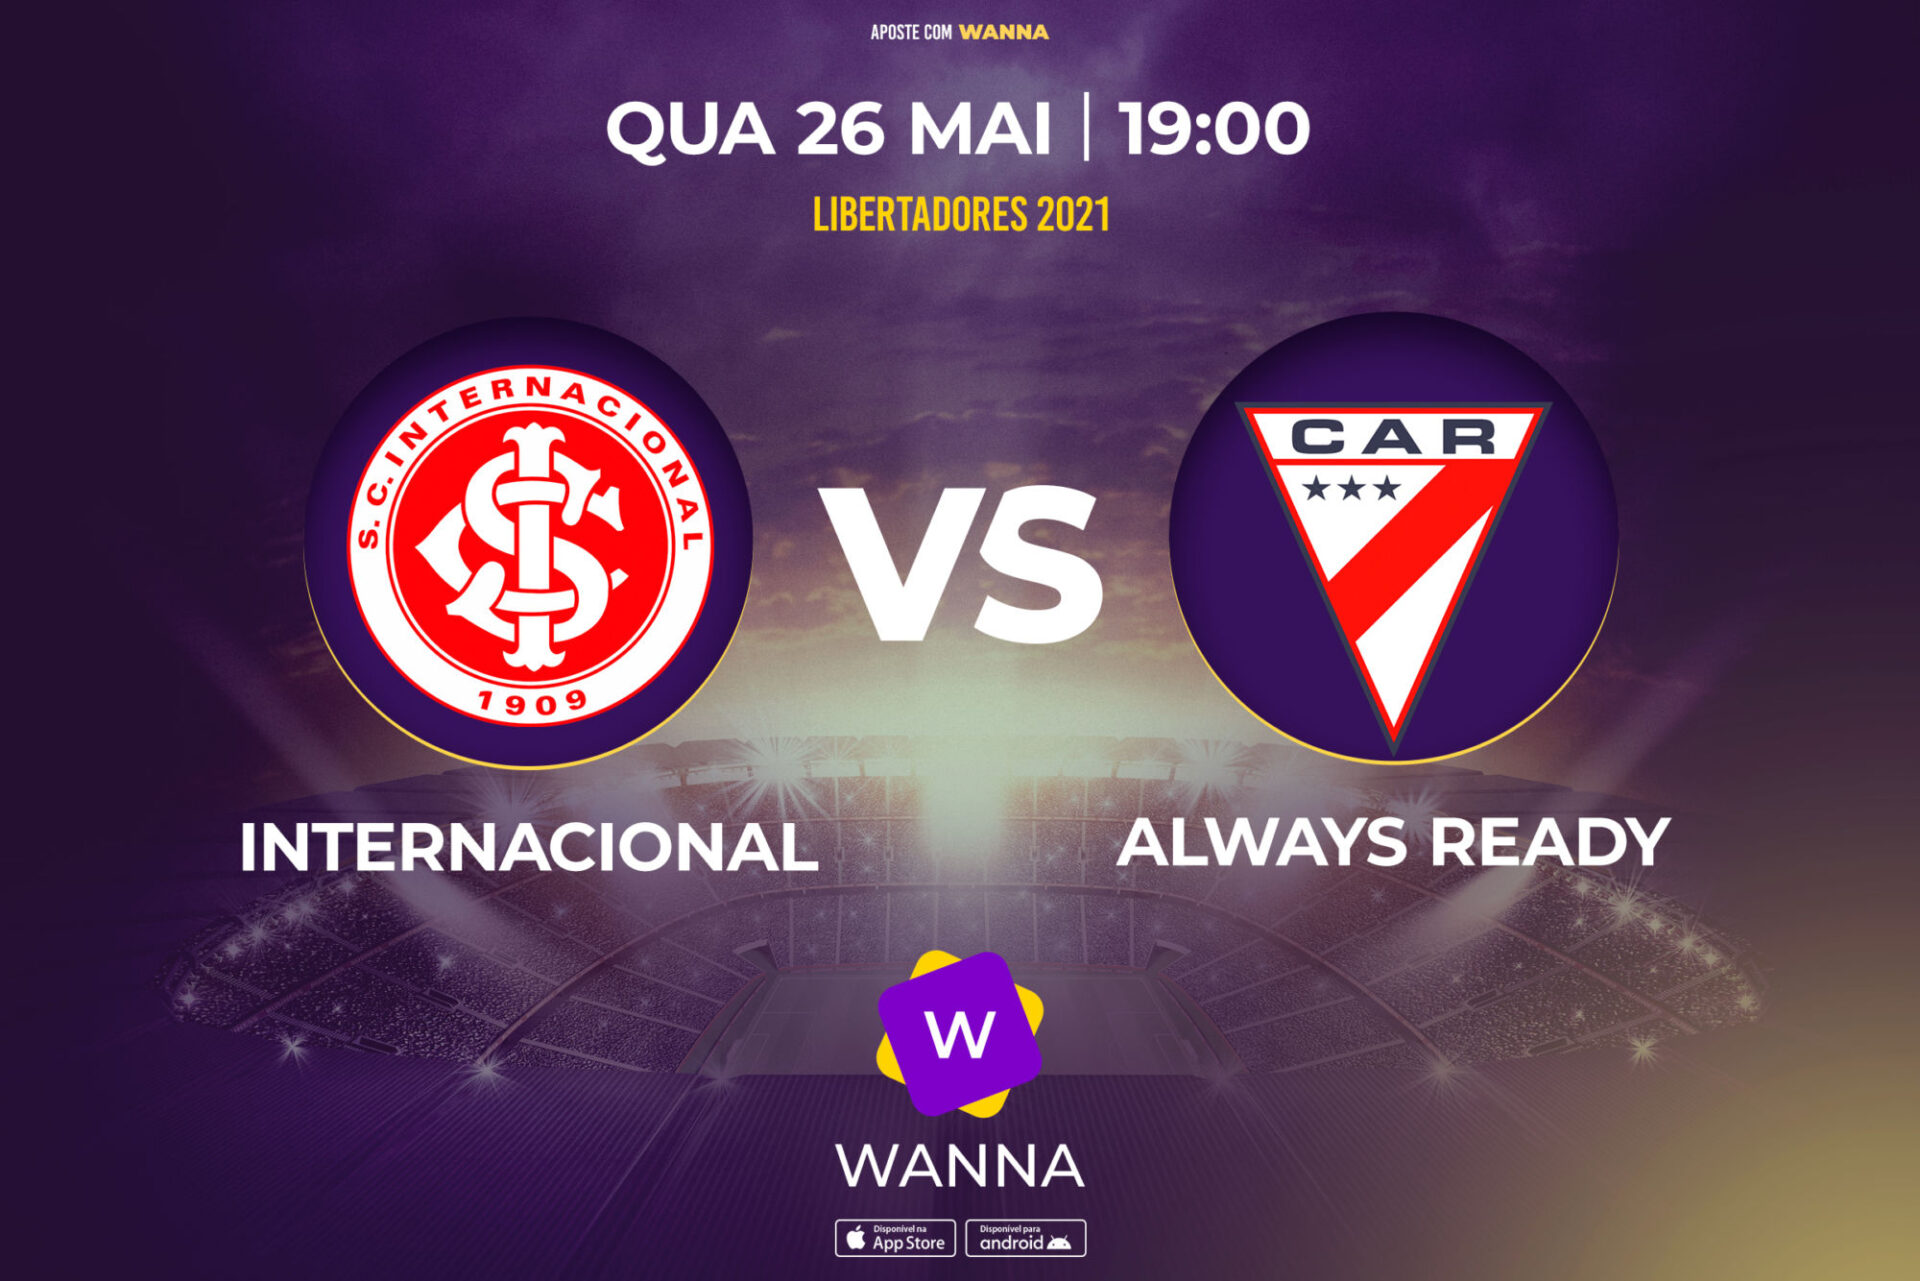 Internacional x Always Ready - Libertadores 2021 - Wanna